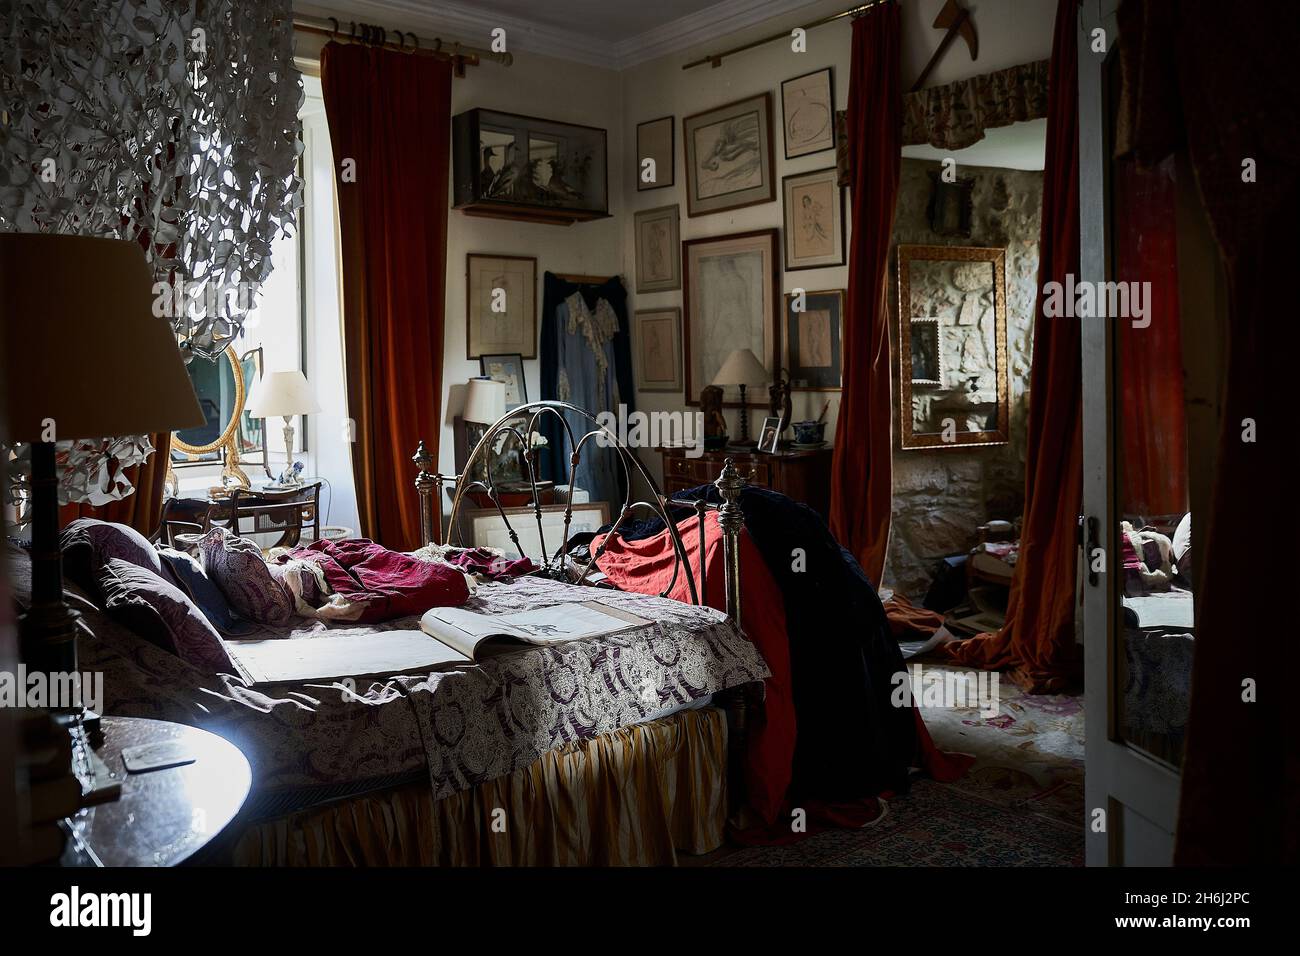 Victorian bedroom decor Stock Photo